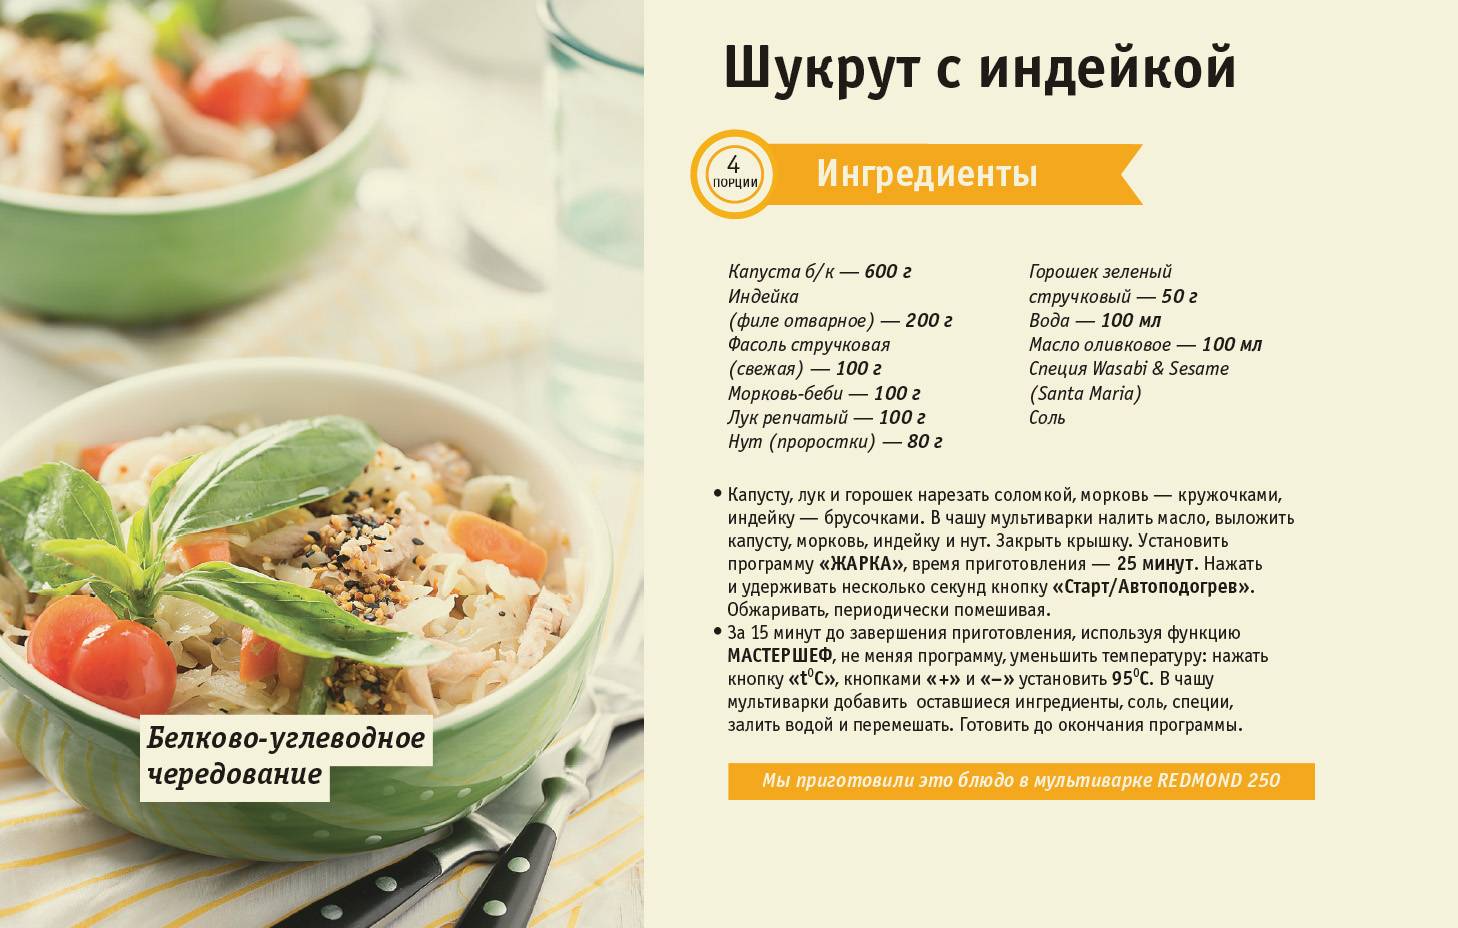 Рецепты блюд для похудения рецепты с фото